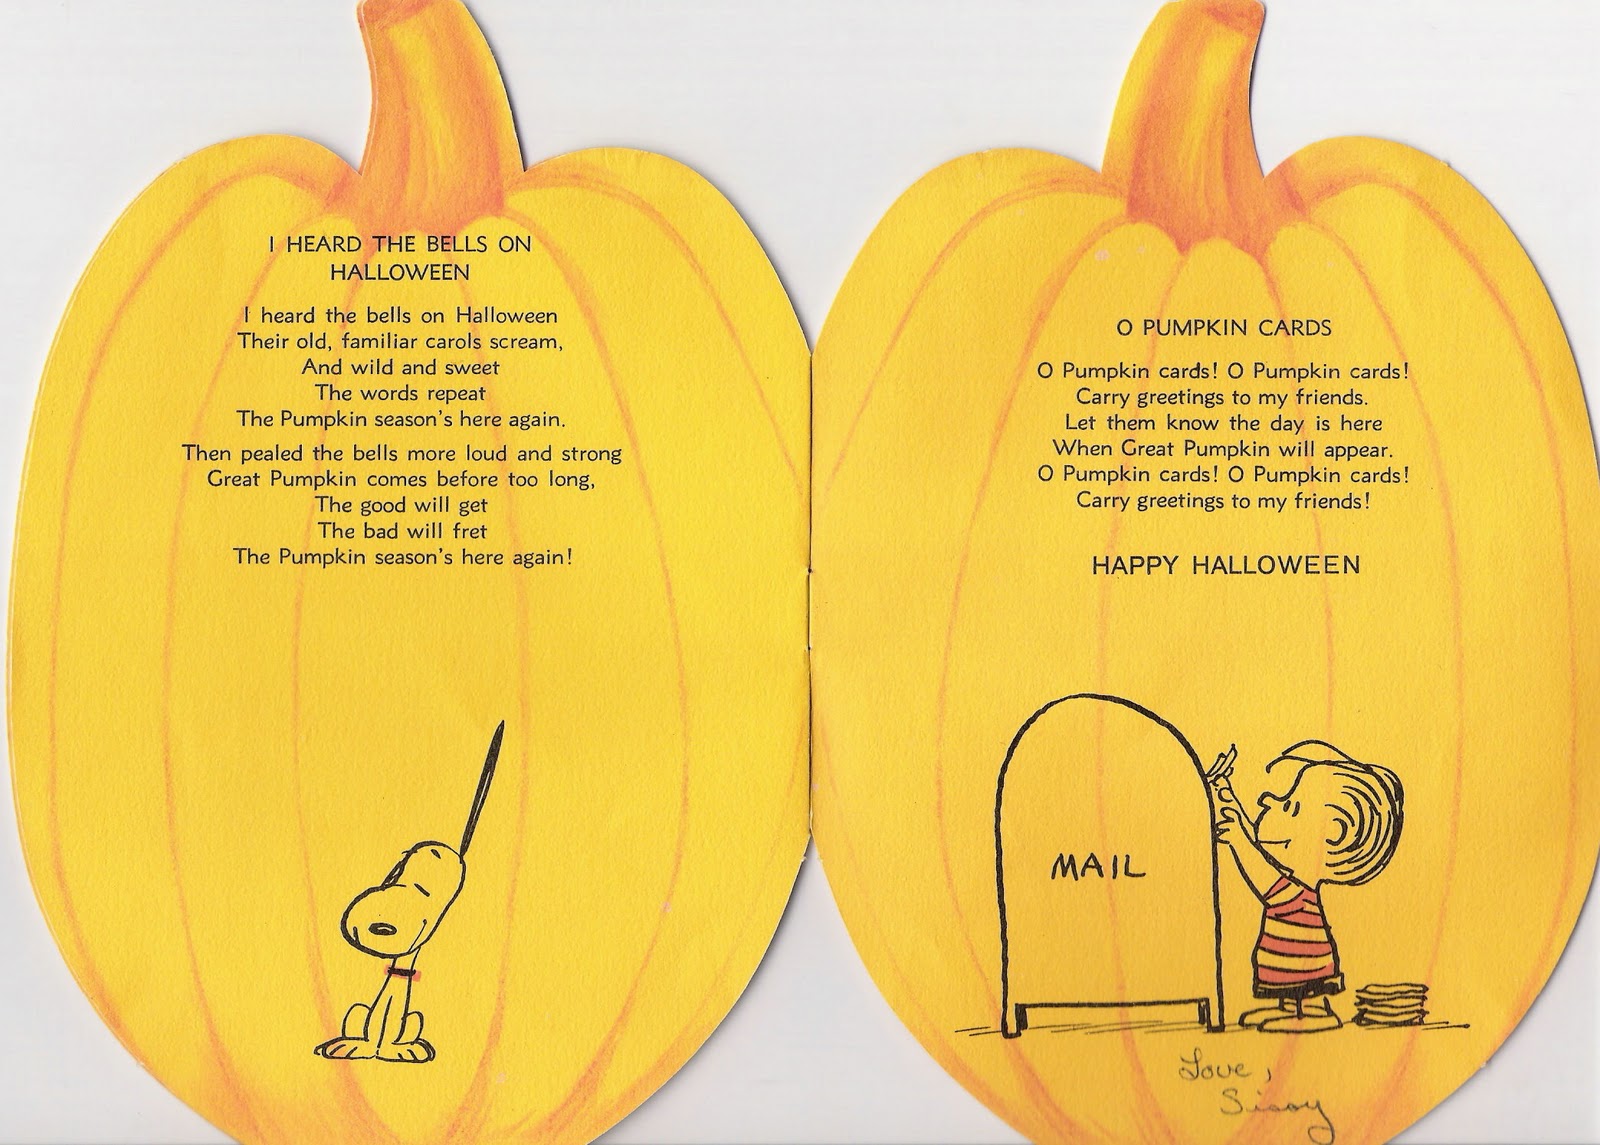 the-peanuts-book-of-pumpkin-carols-4.jpg